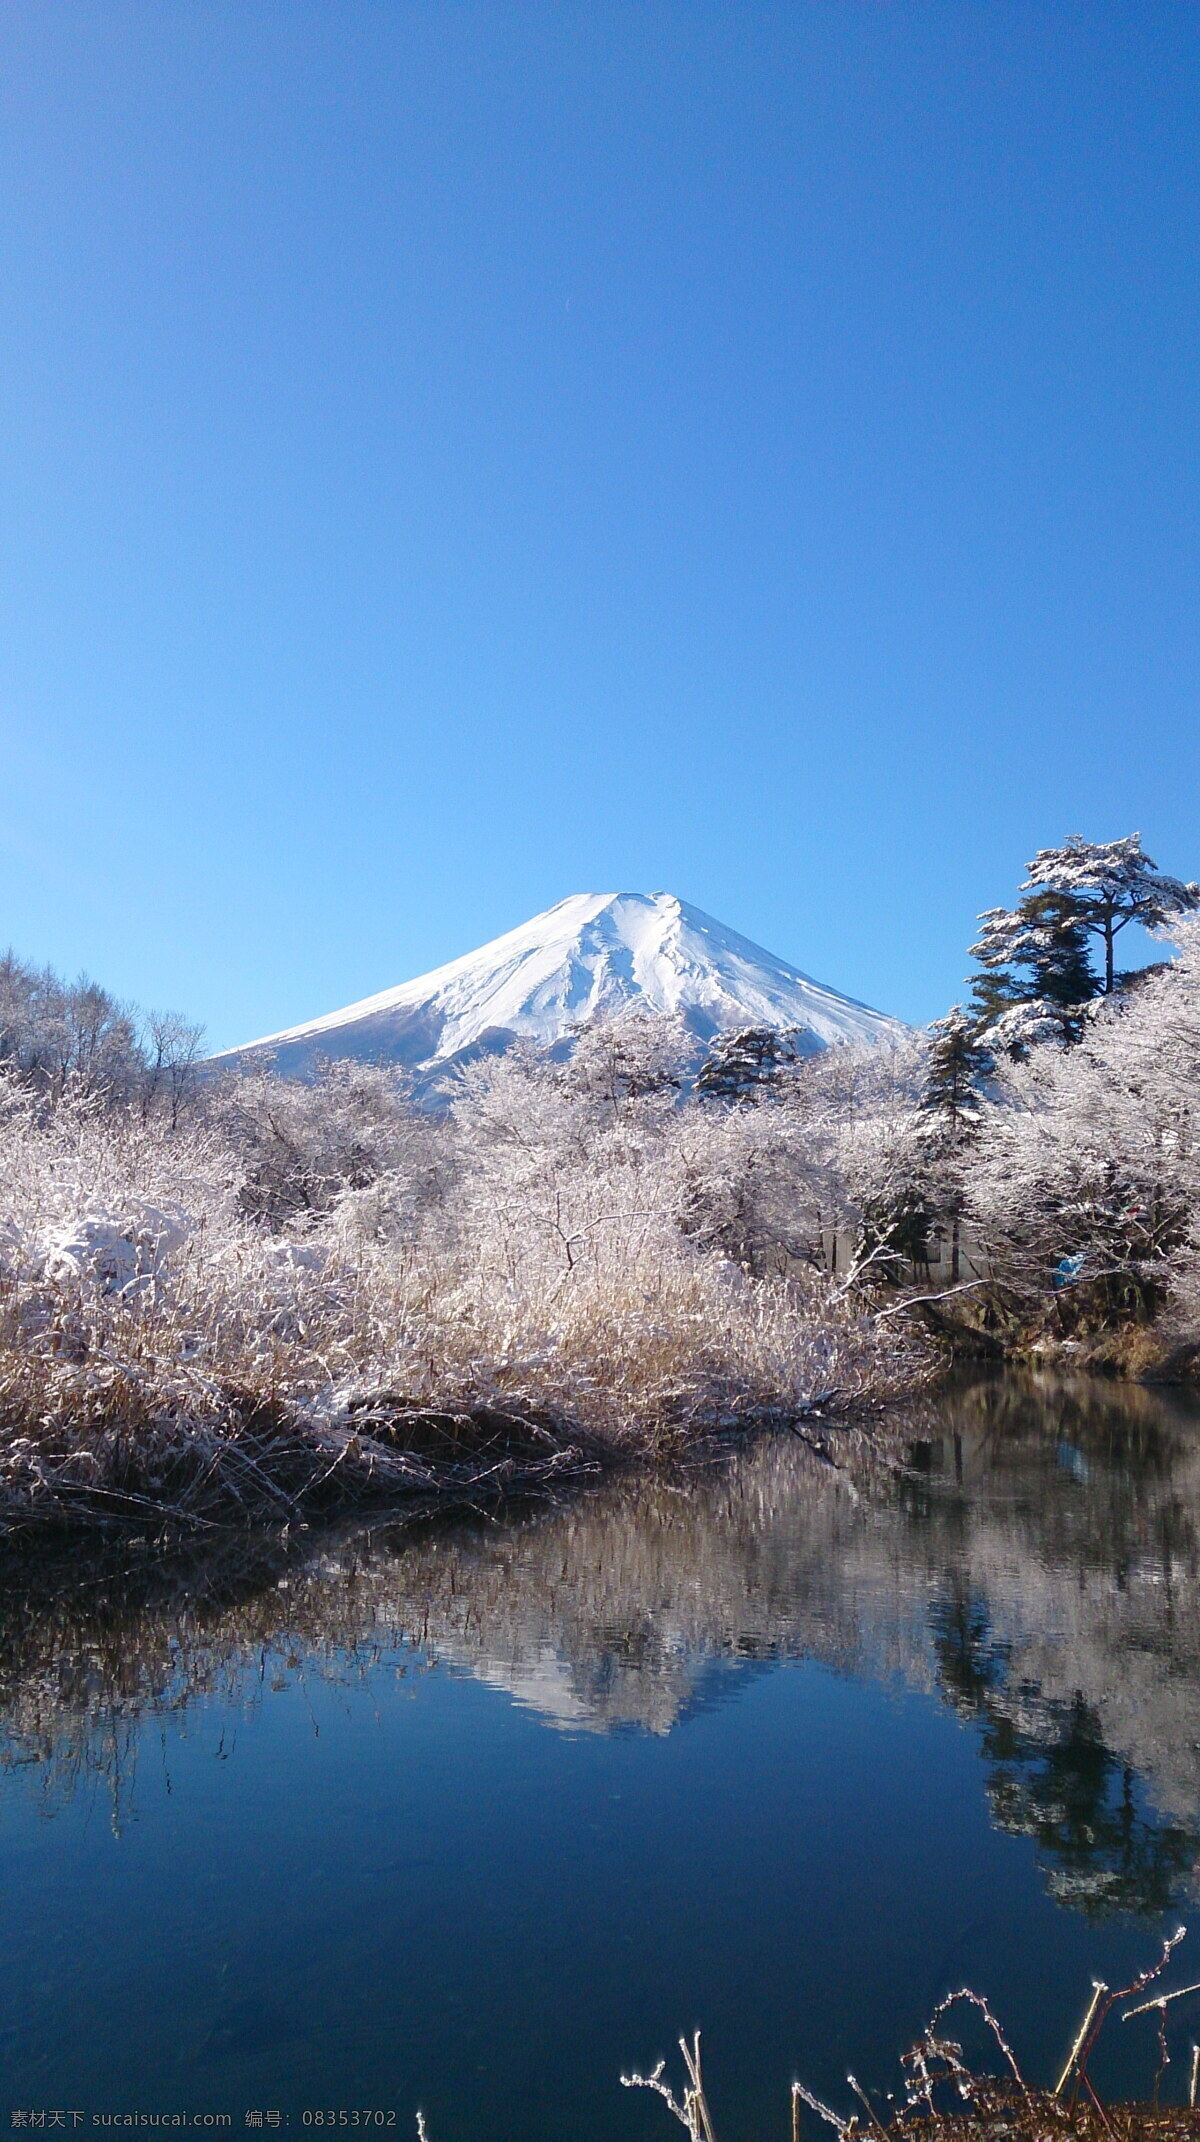 富士山高清 富士山 日本 日本富士山 蓝天 天空 雪山 积雪 高山 山峰 树木 湖水 湖面 倒影 富士山风景 旅游风光 风景图 自然景观 自然风景